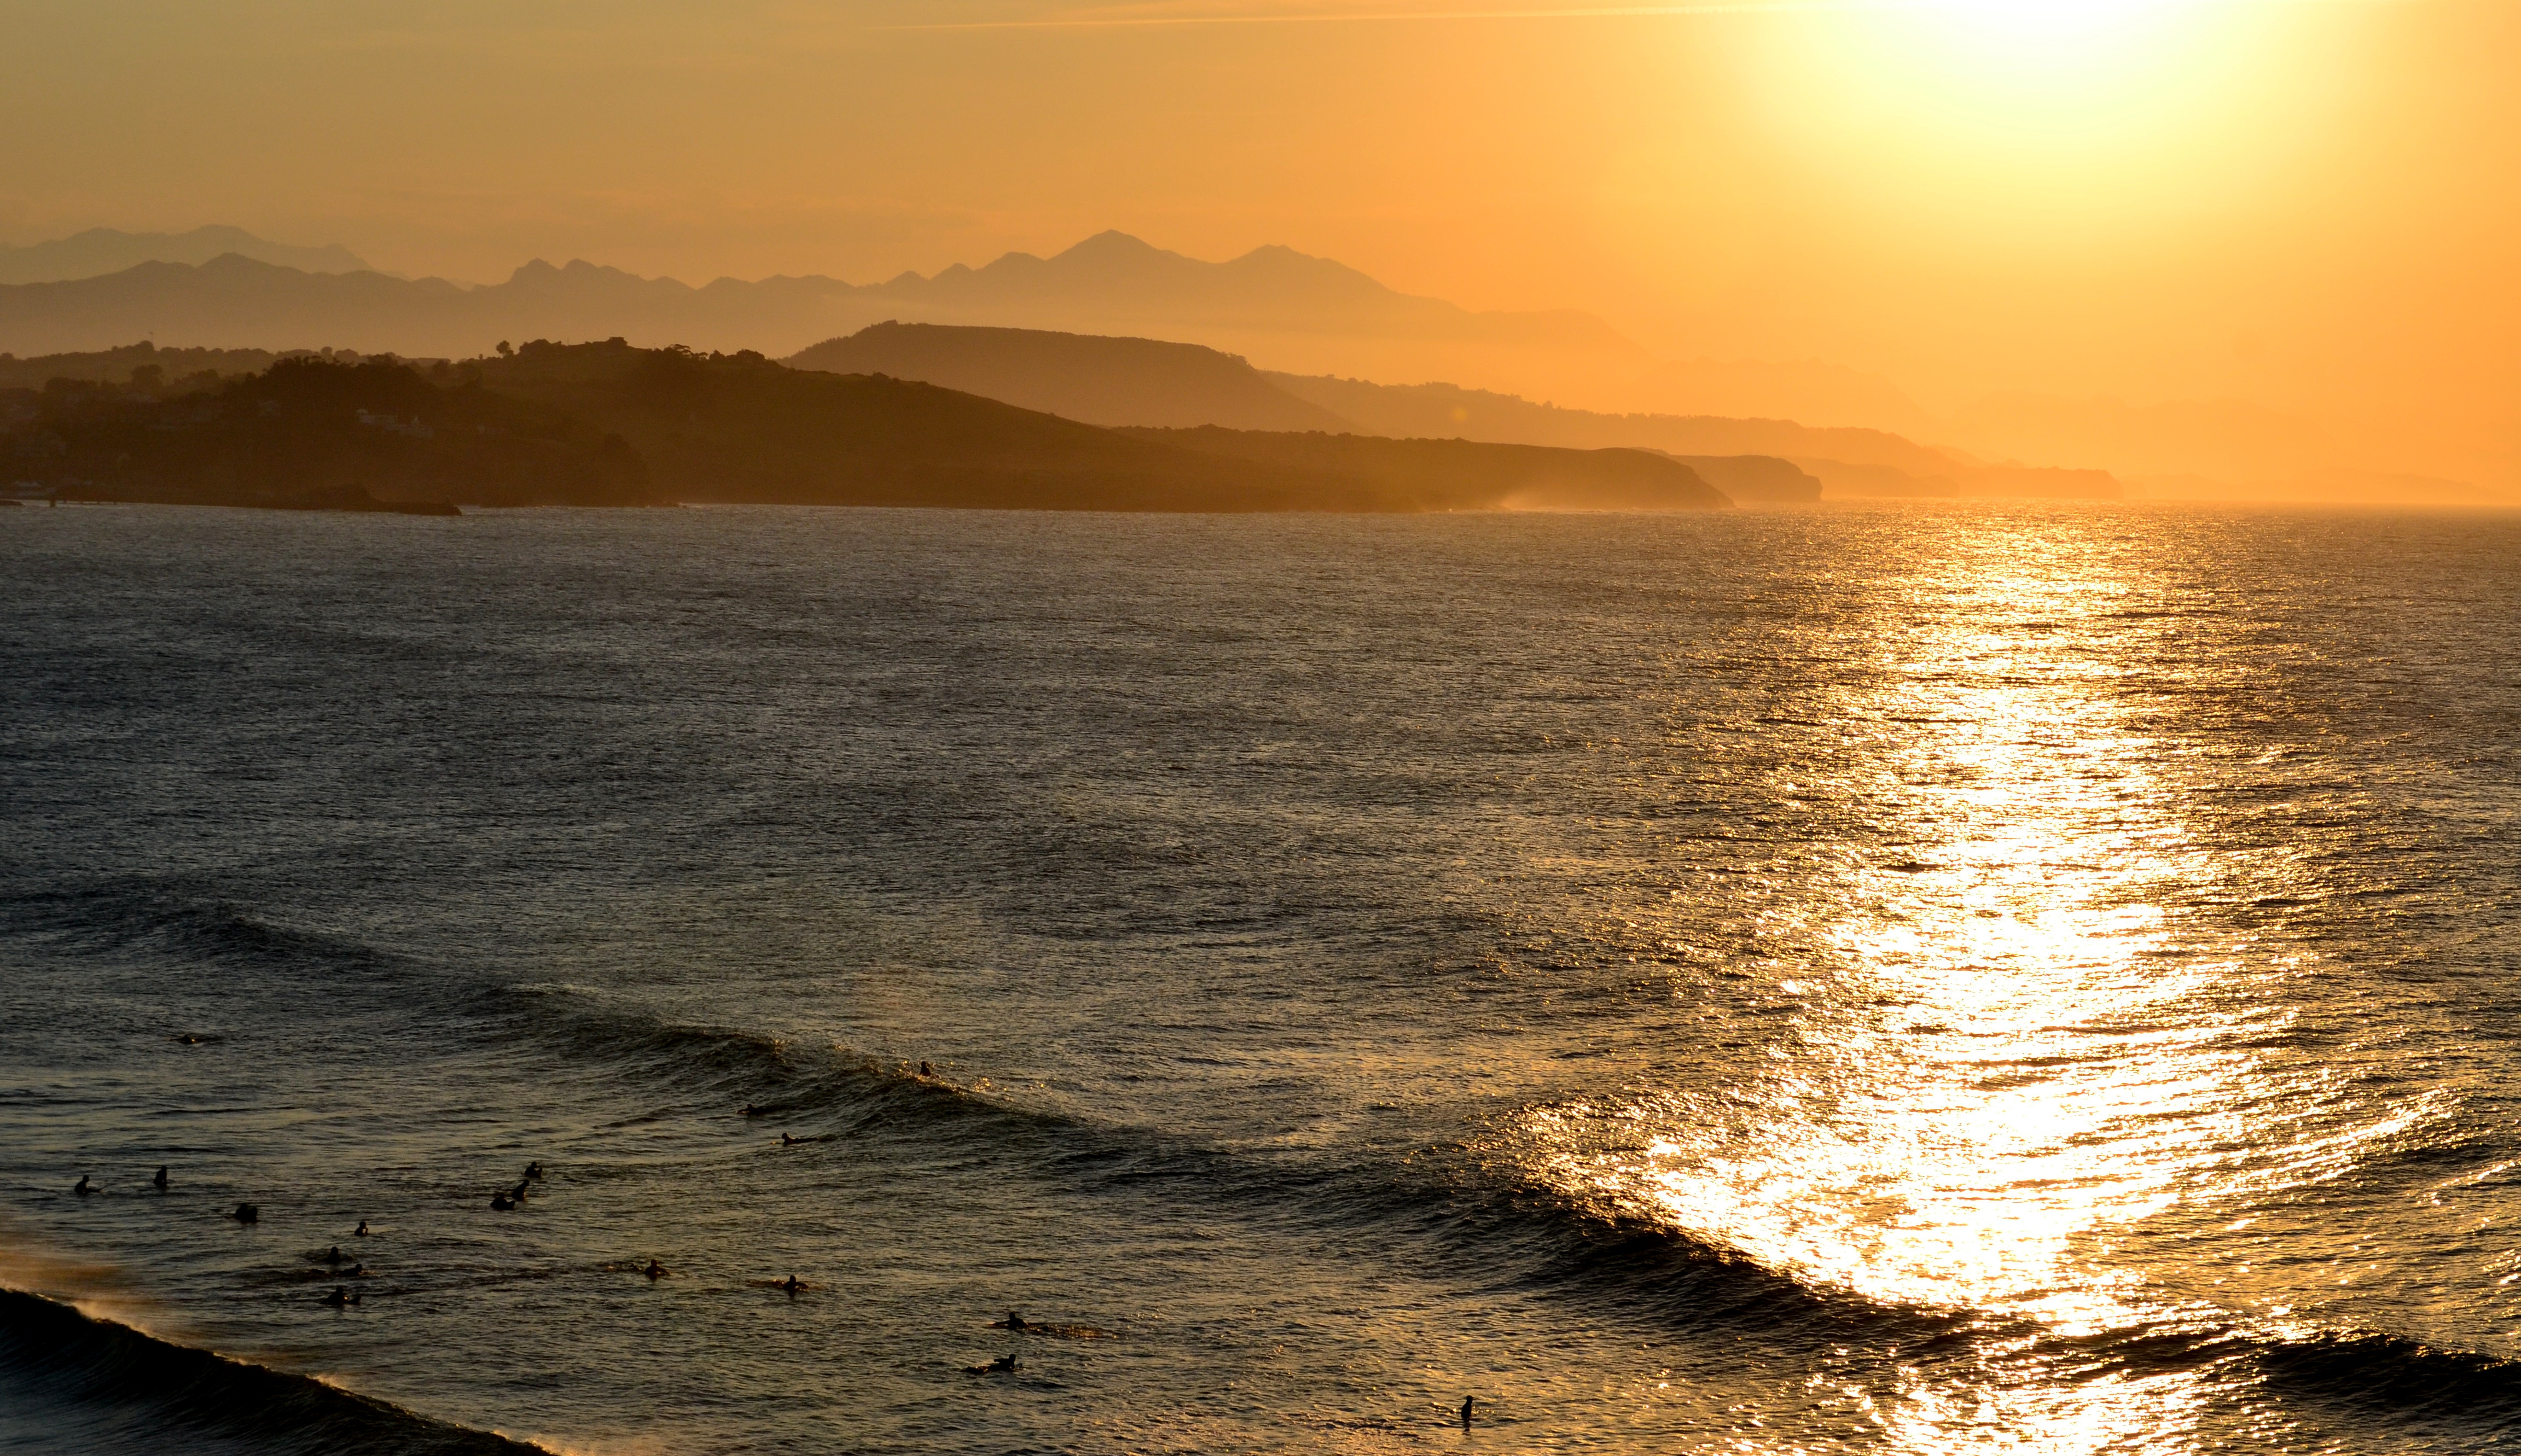 Puesta de sol desde la playa del Cabo de Oyambre. Hay surfistas en el agua